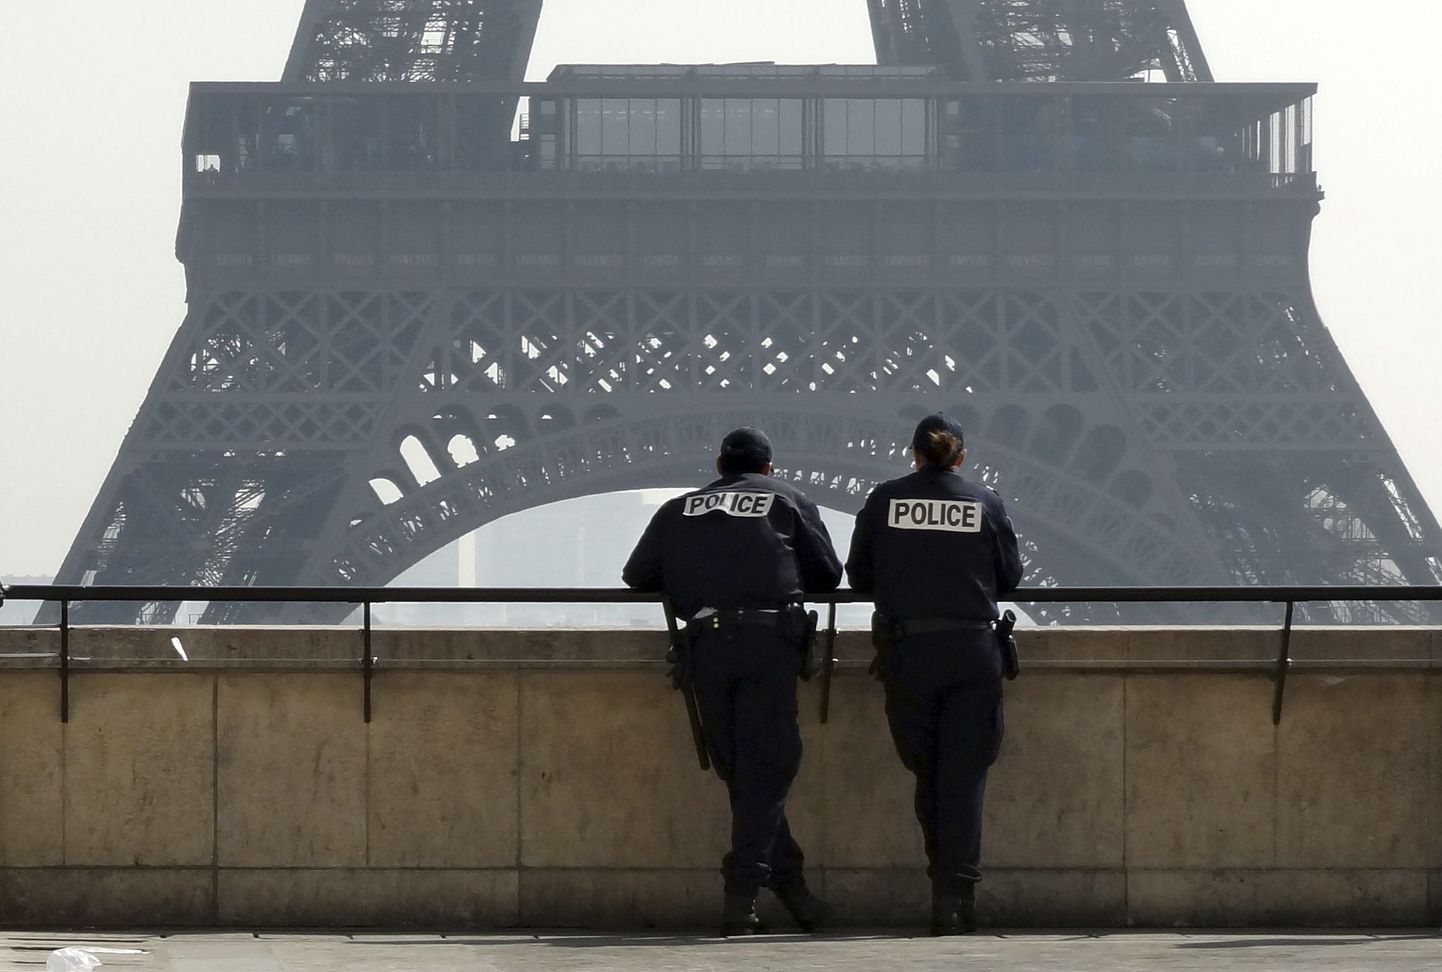 Prantsuse politseinikud Pariisis Trocadero väljakul Eiffeli torni lähedal.